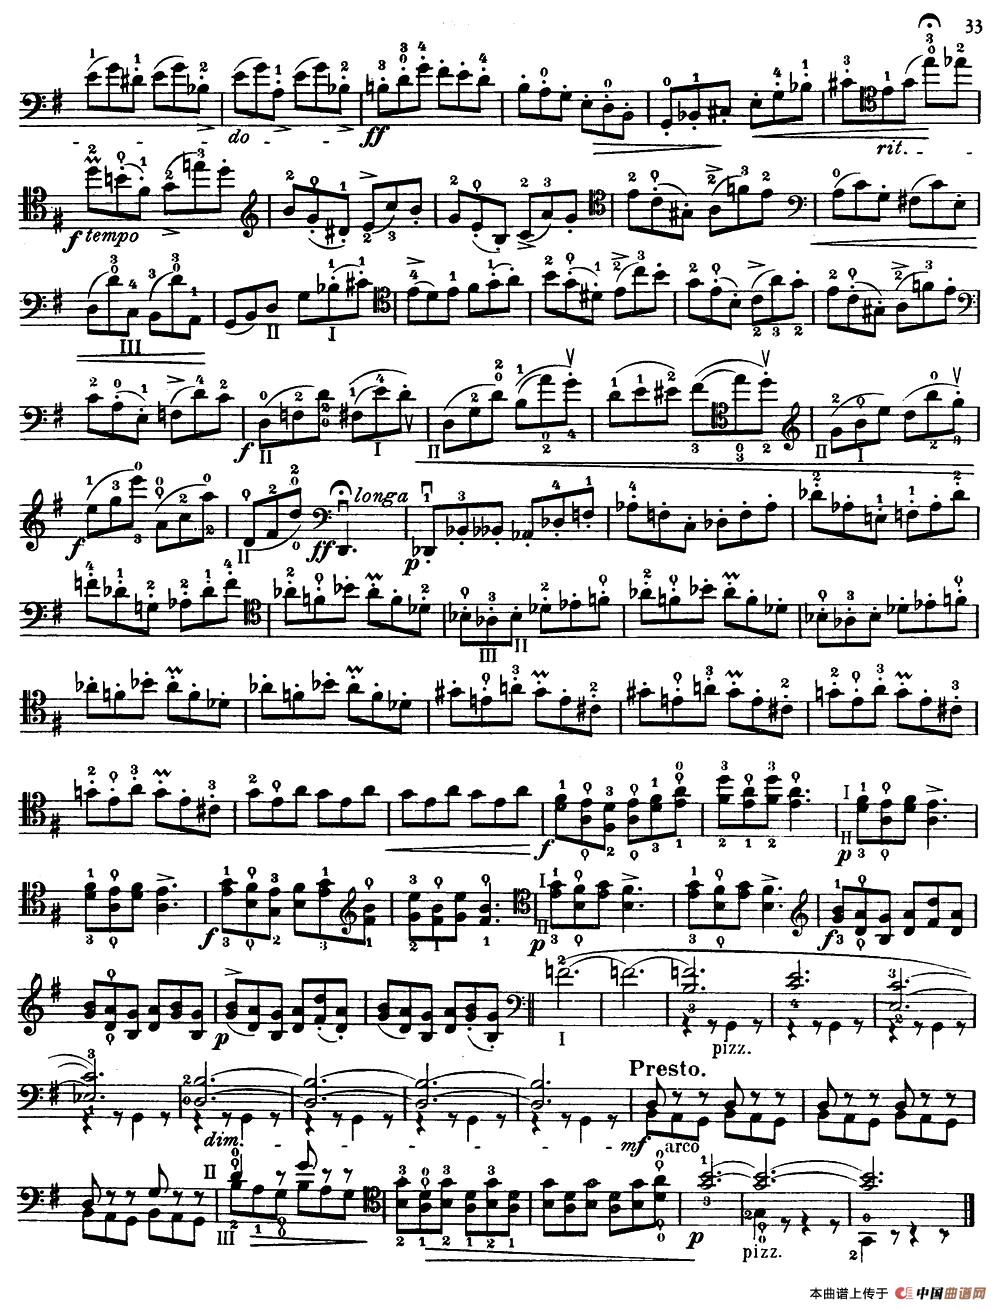 大提琴高级练习曲40首 No.15小提琴谱